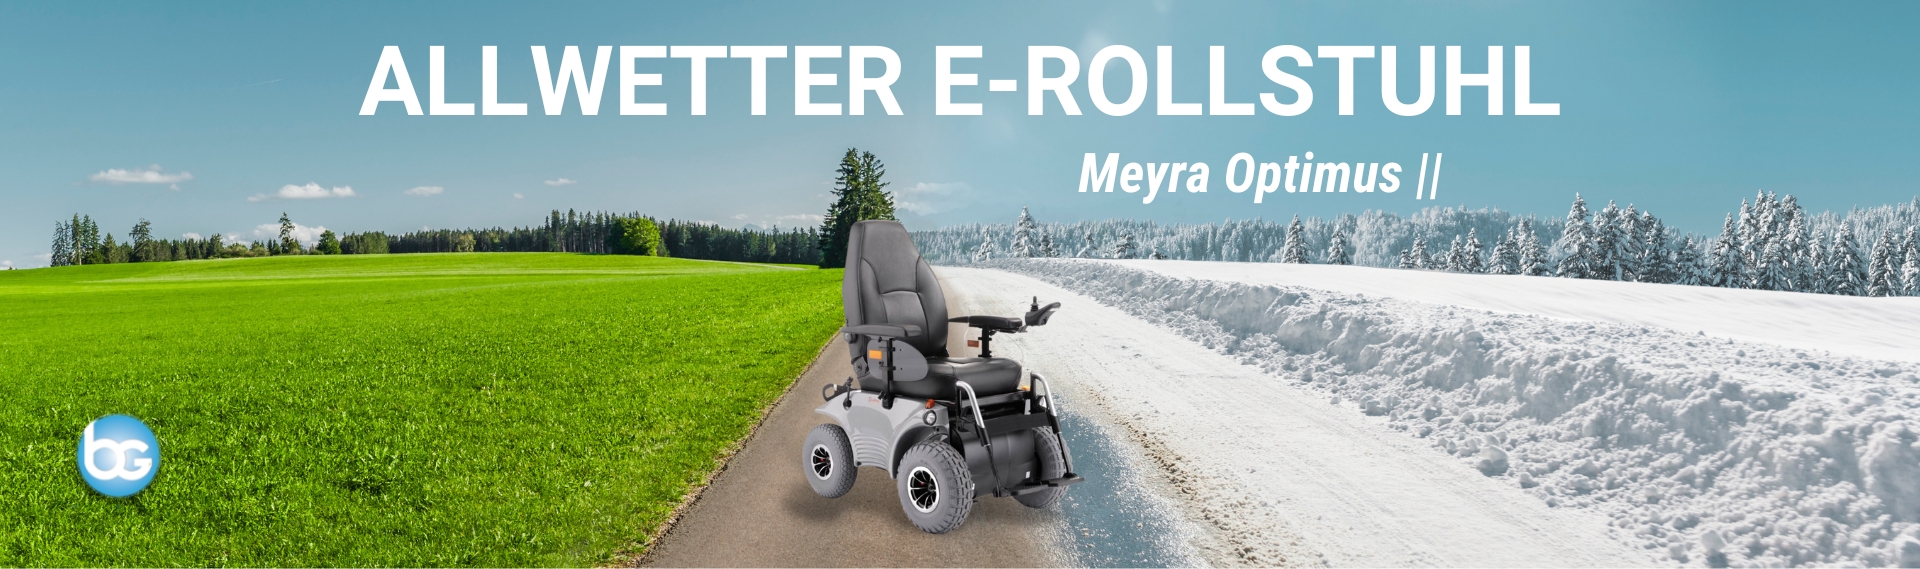 Der Meyra Optimus 2 bietet mit der direkten Lenkung große Sicherheit und Zuverlässigkeit beim Fahren im Außenbereich. Durch Einzelradfederung und hohe Steigfähigkeit ideal für unwegsames Gelände.        